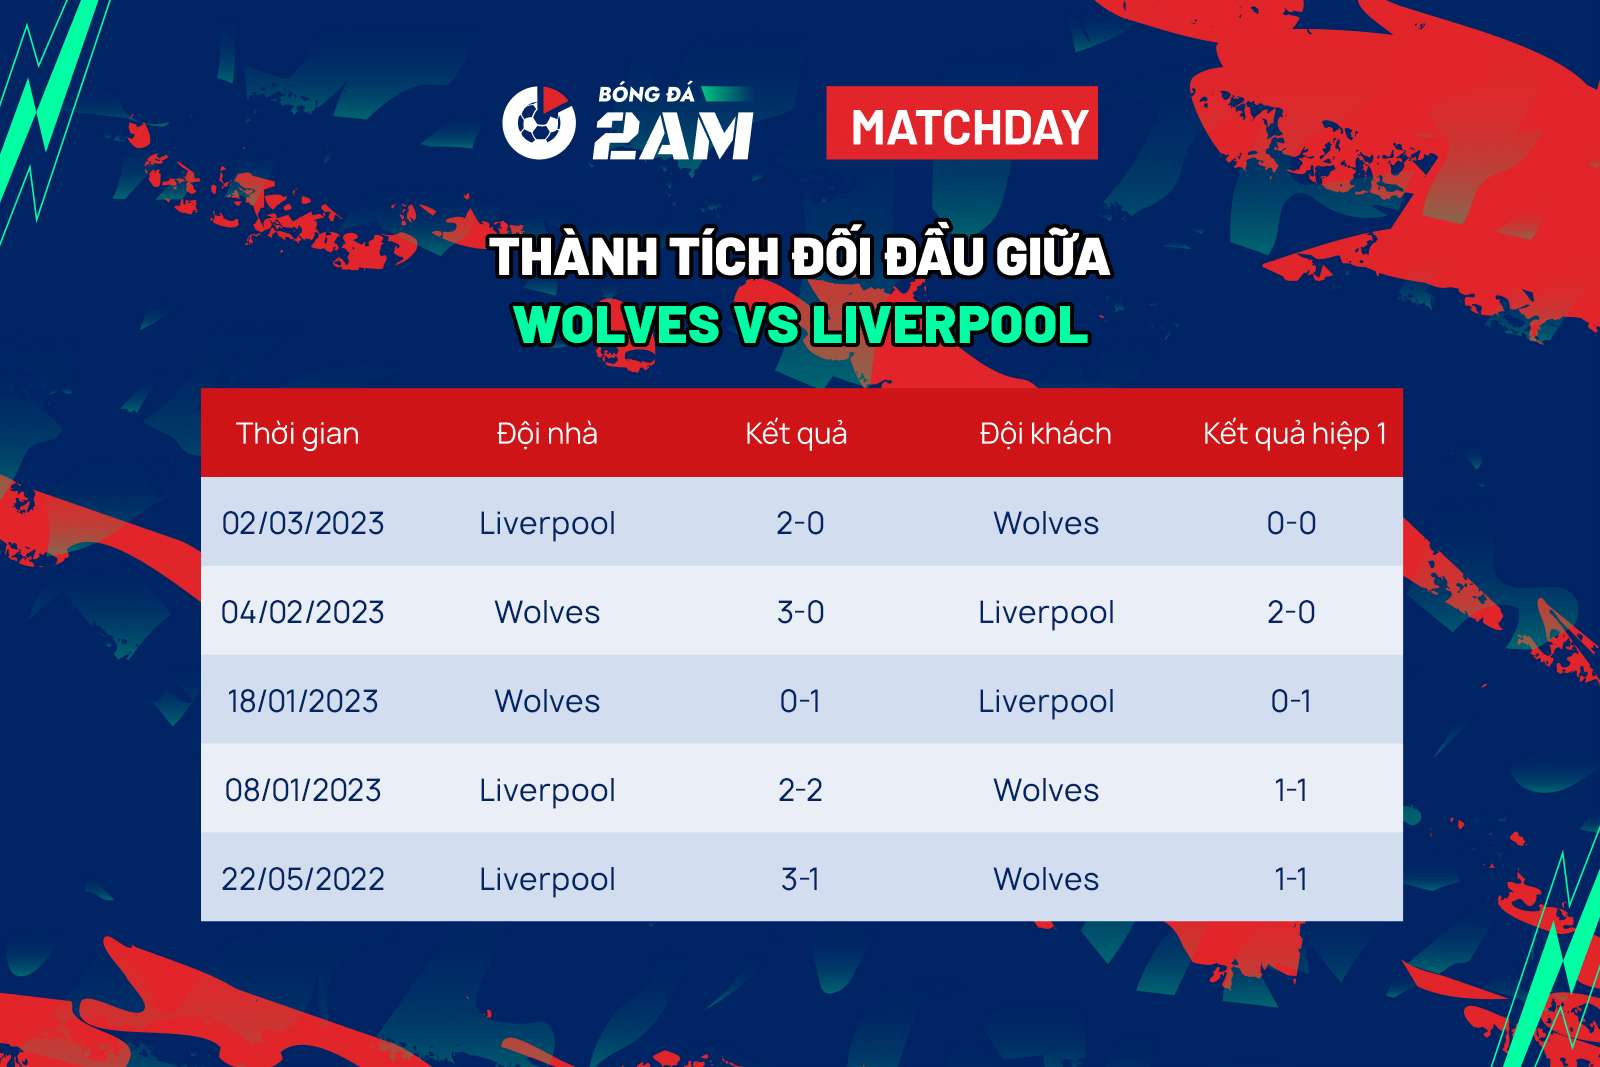 Wolves vs Liverpool chạm trán